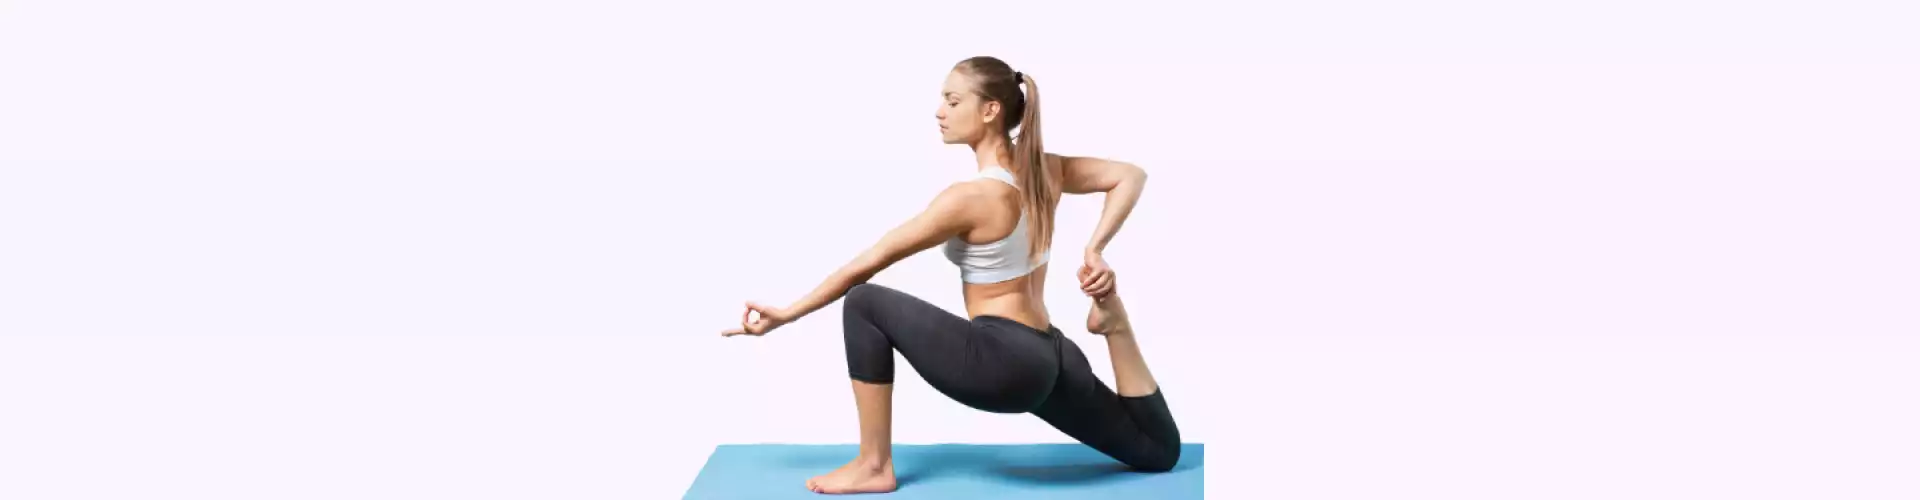 Yoga restaurateur - Relaxation par la respiration